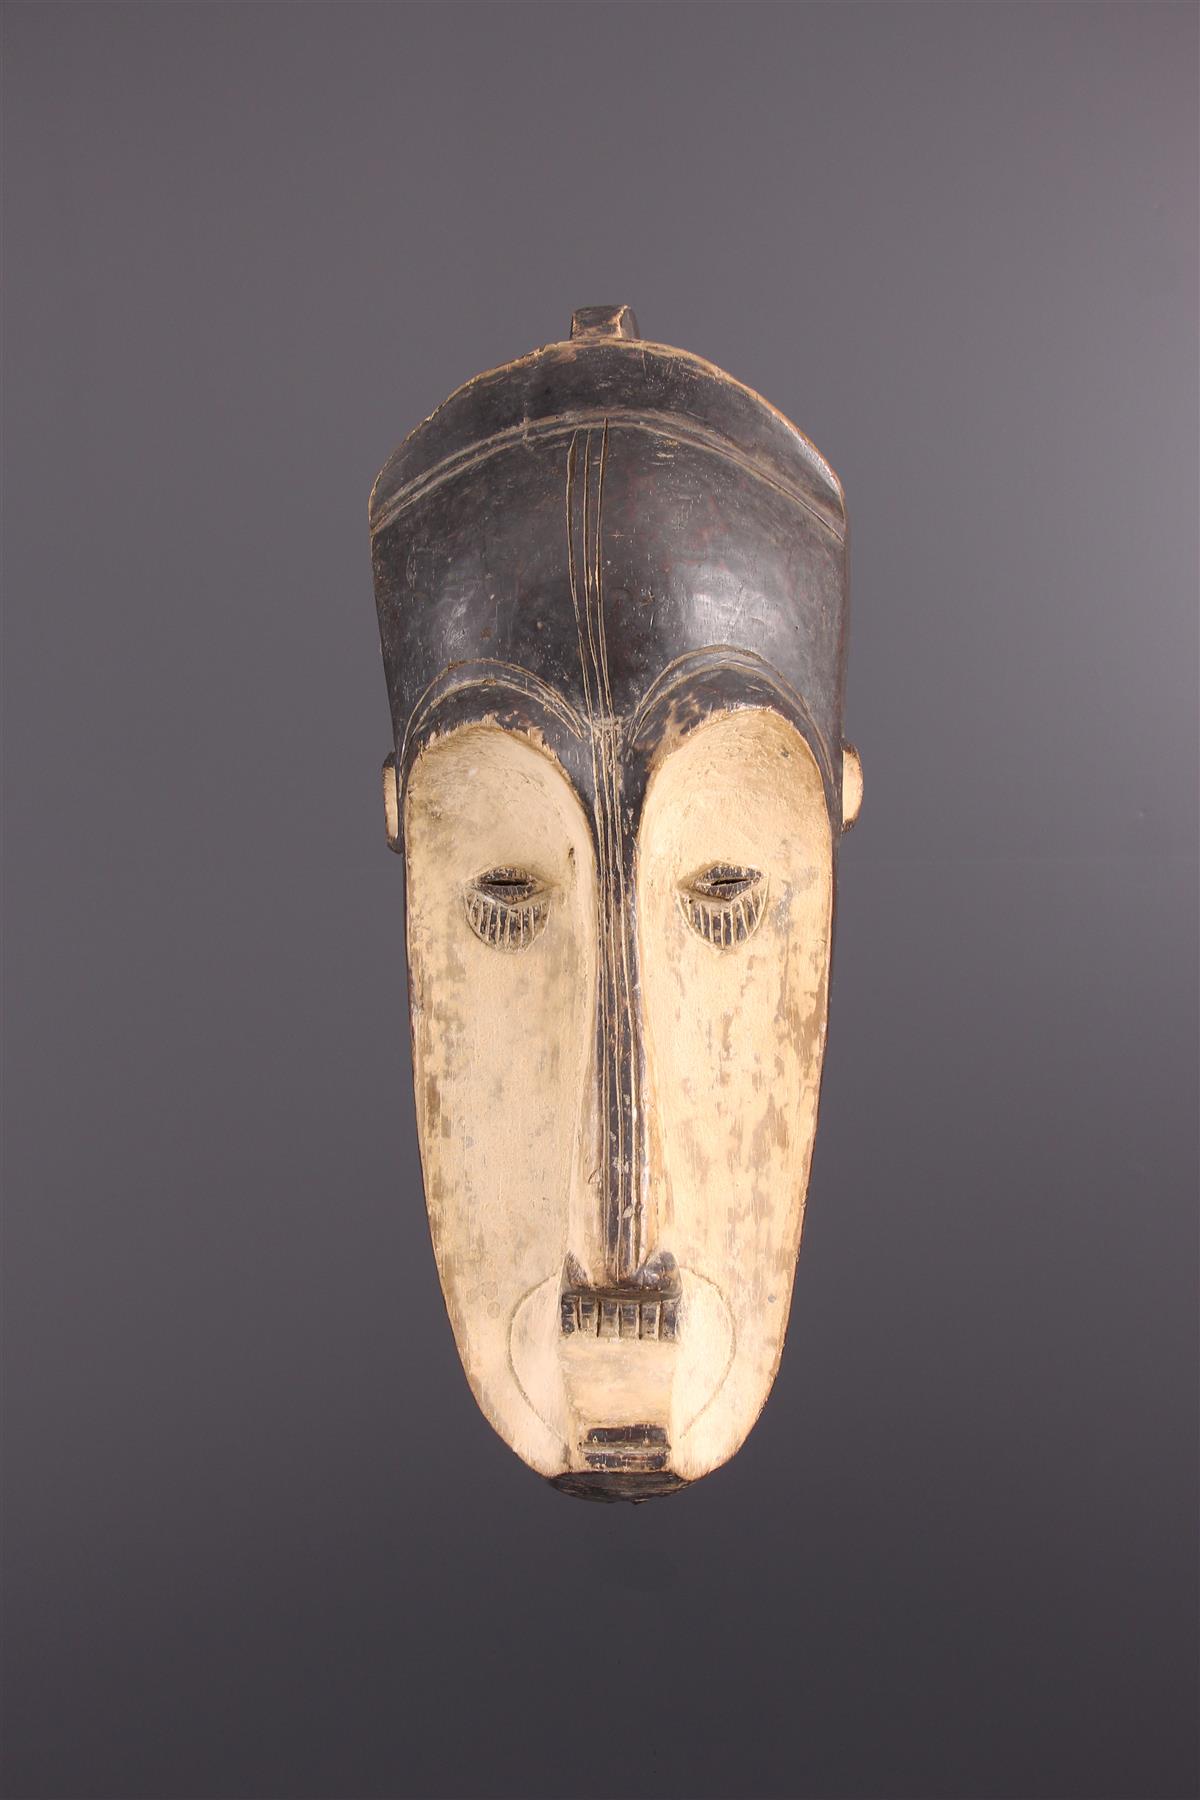 Fang Maschera - Arte africana